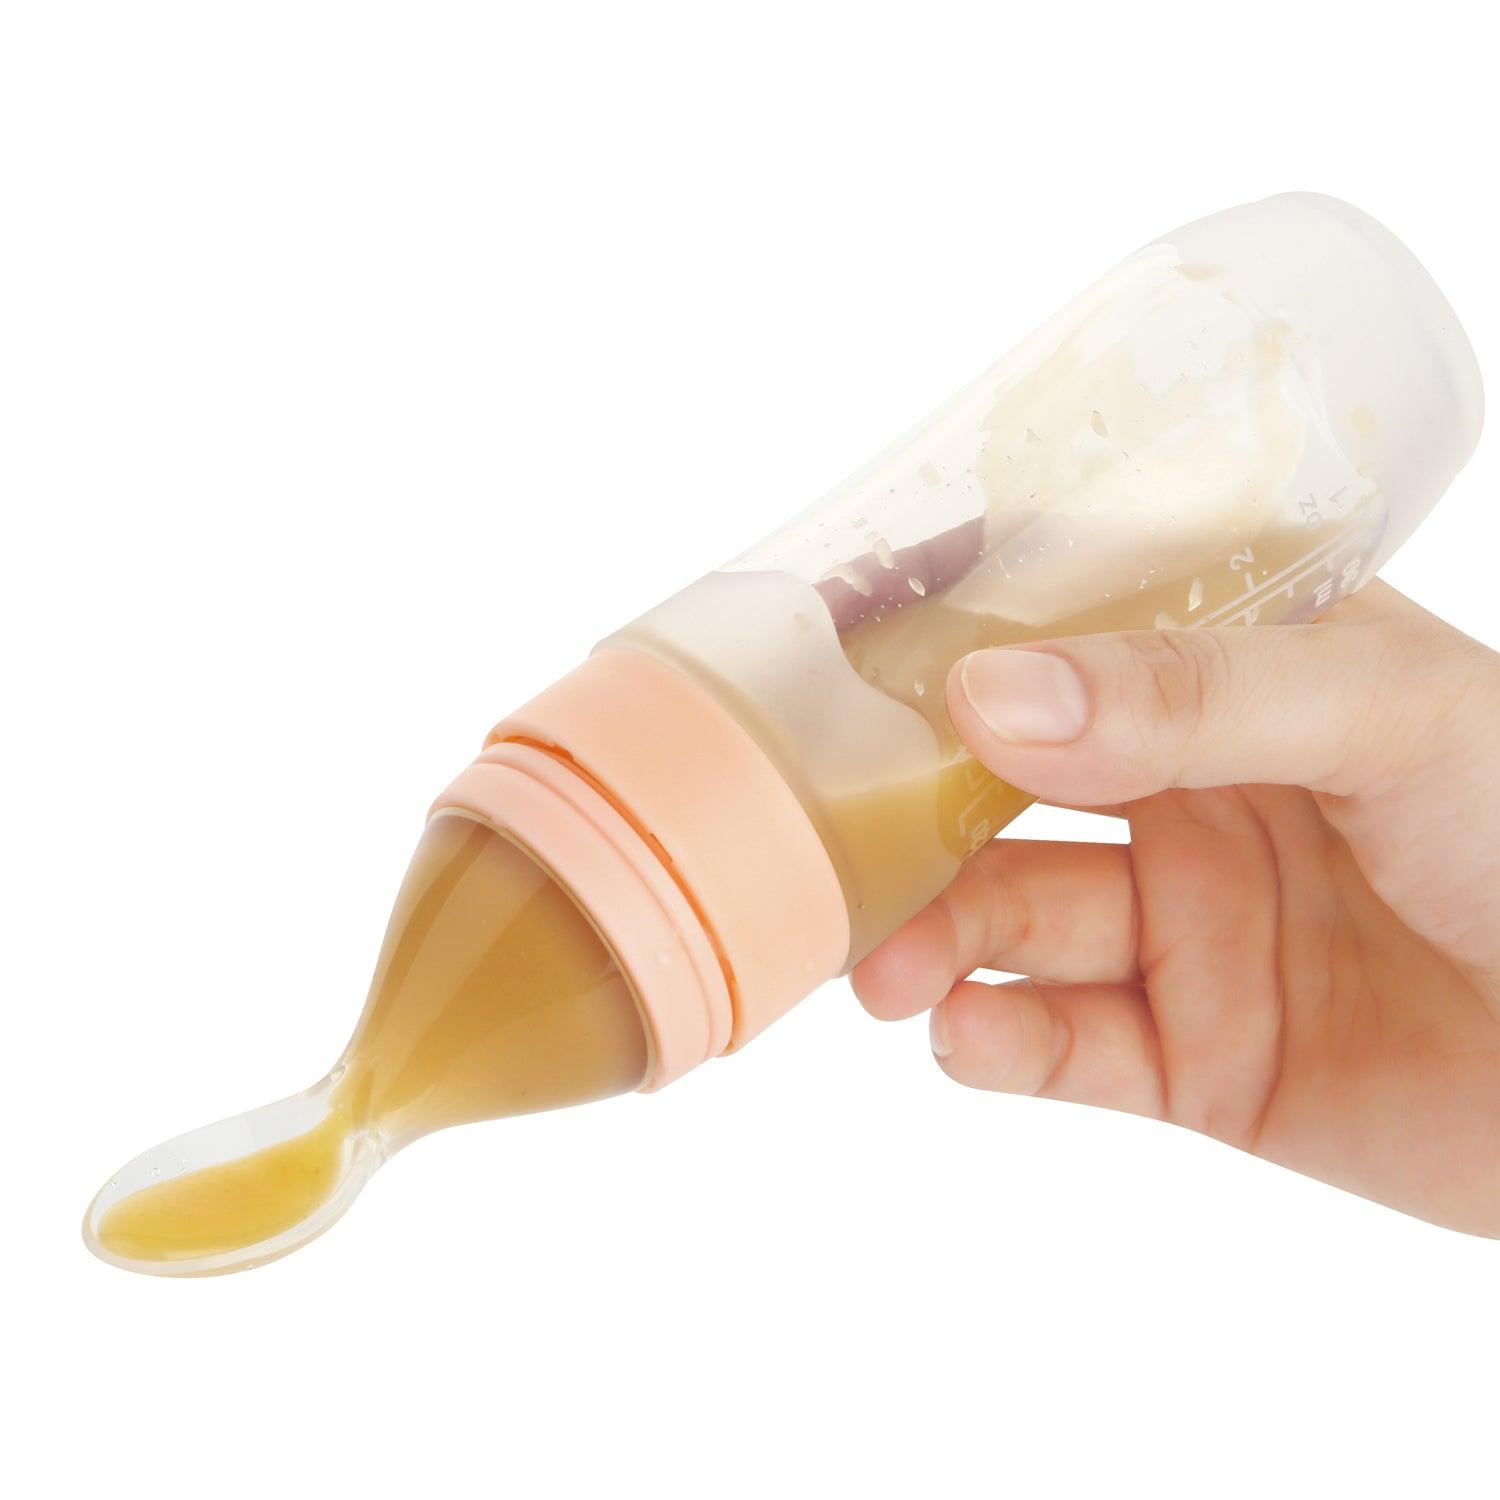 Cuchara dispensadora de alimentos para bebés de silicona (paquete